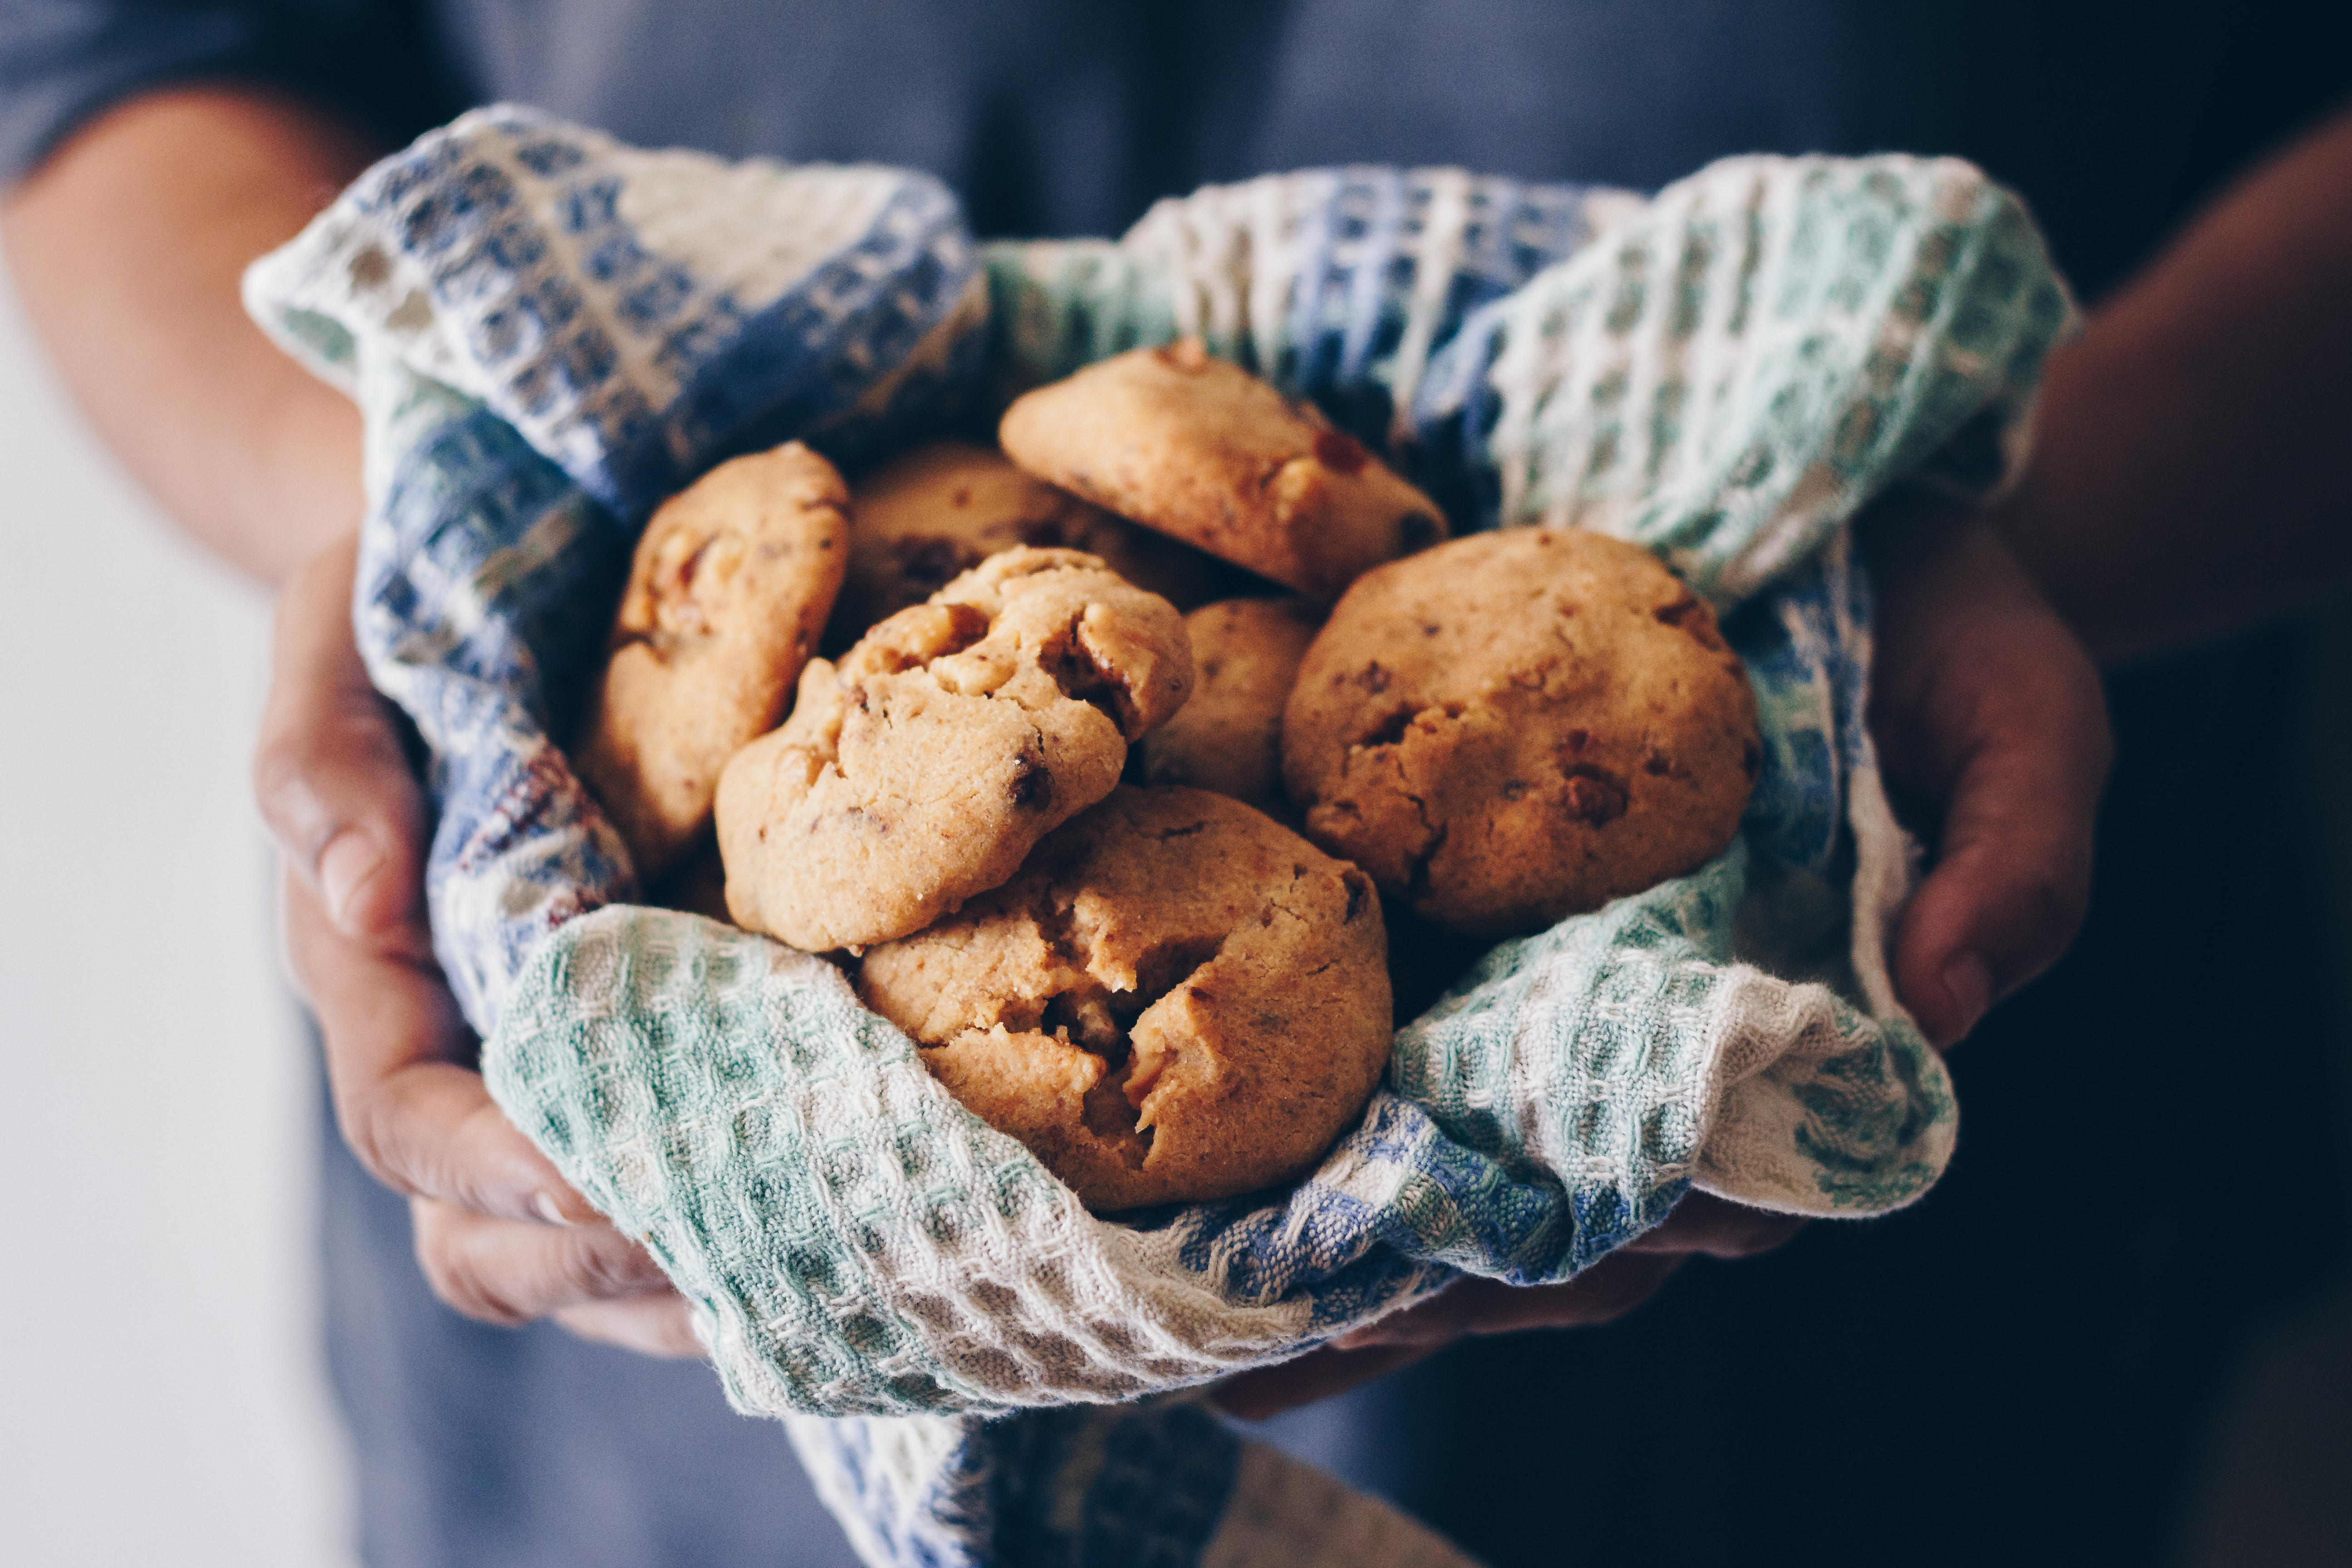 Homemade cookies | Source: Shutterstock